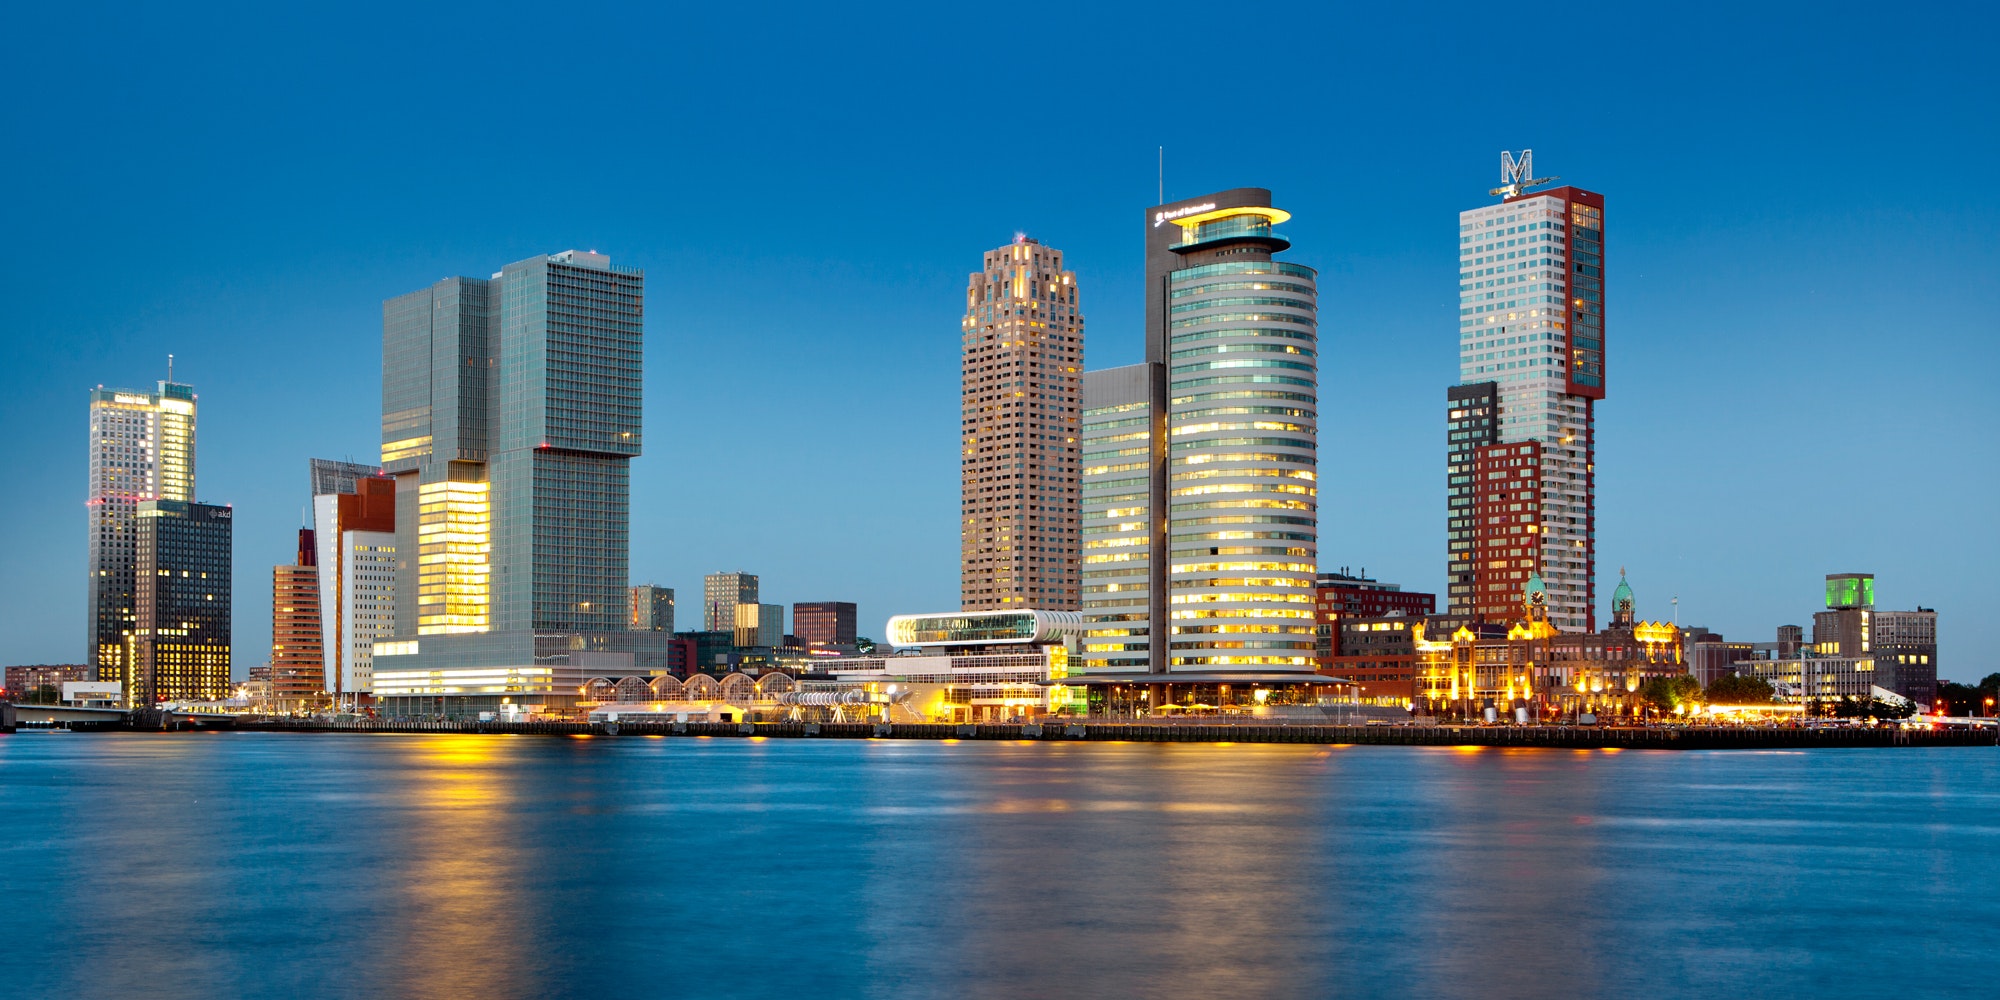 About Rotterdam | Rotterdam Tourist Information